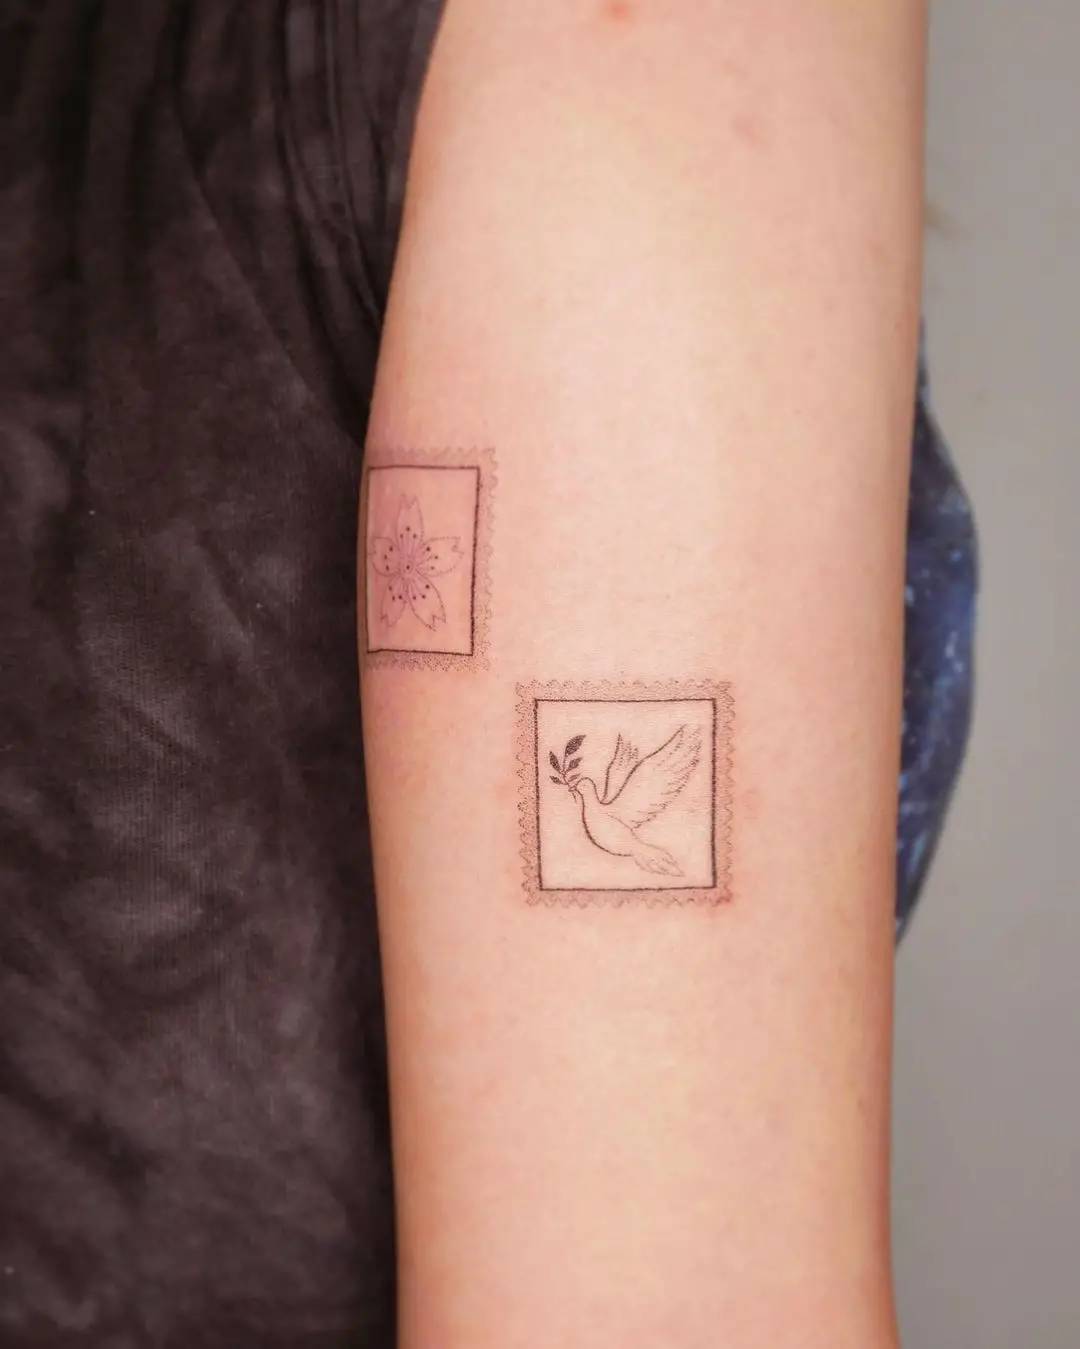 Dove tattoo on forearm by averykiyo